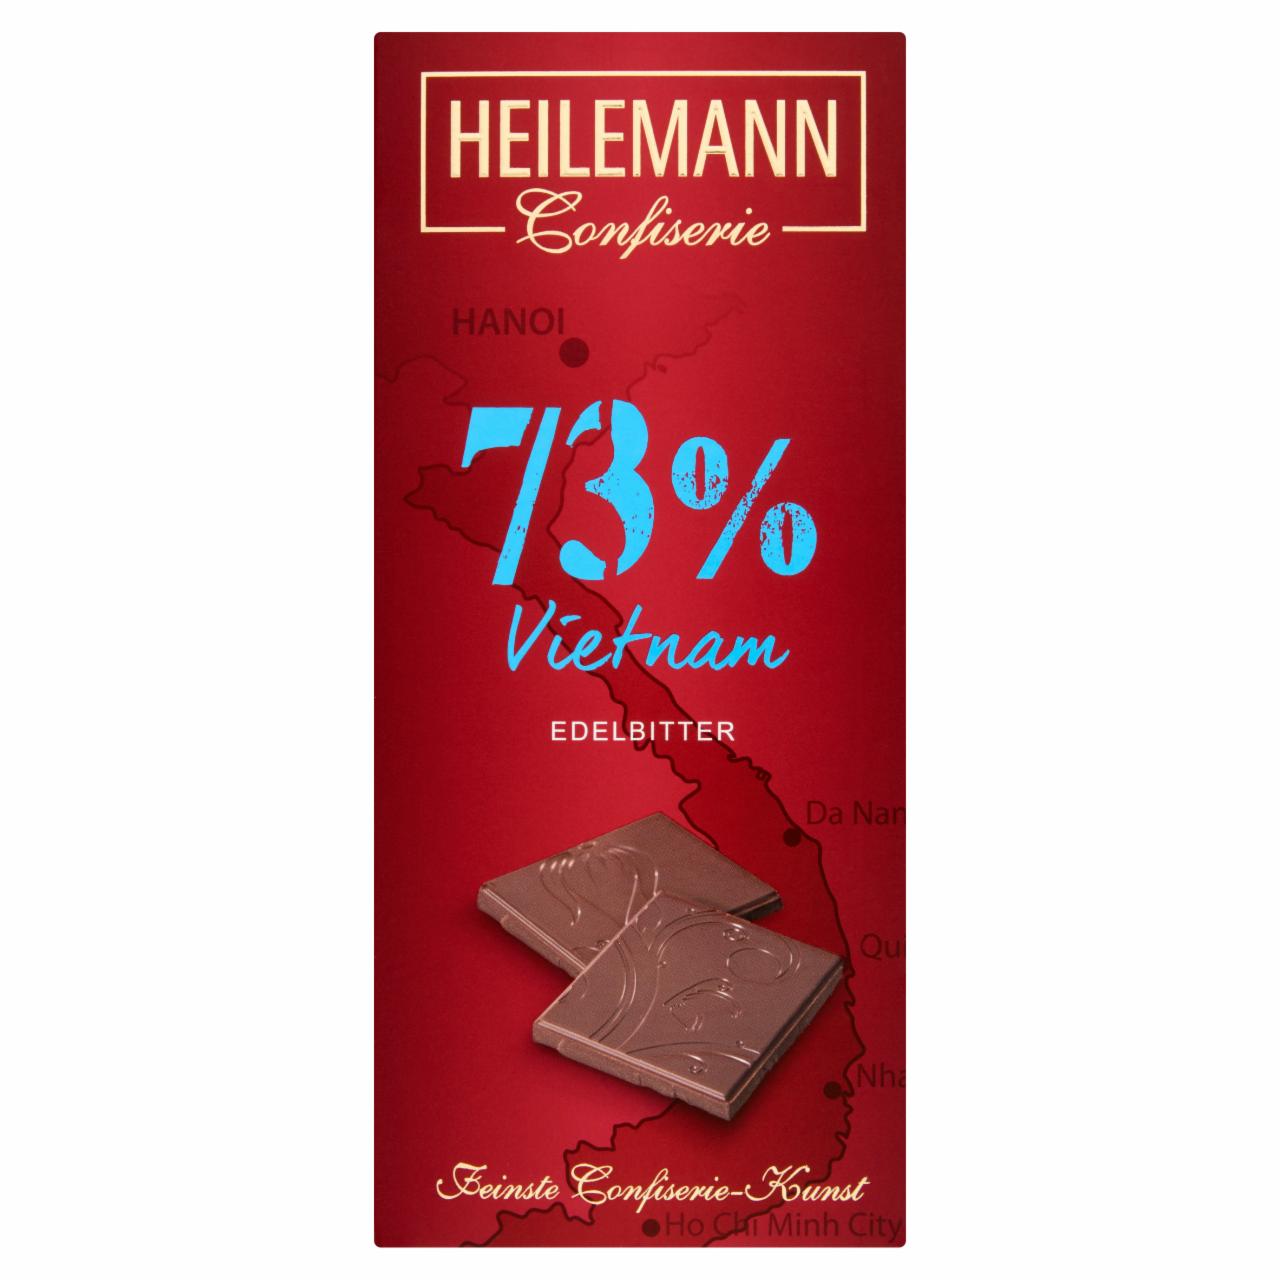 Képek - Heilemann Vietnam étcsokoládé 73% 80 g